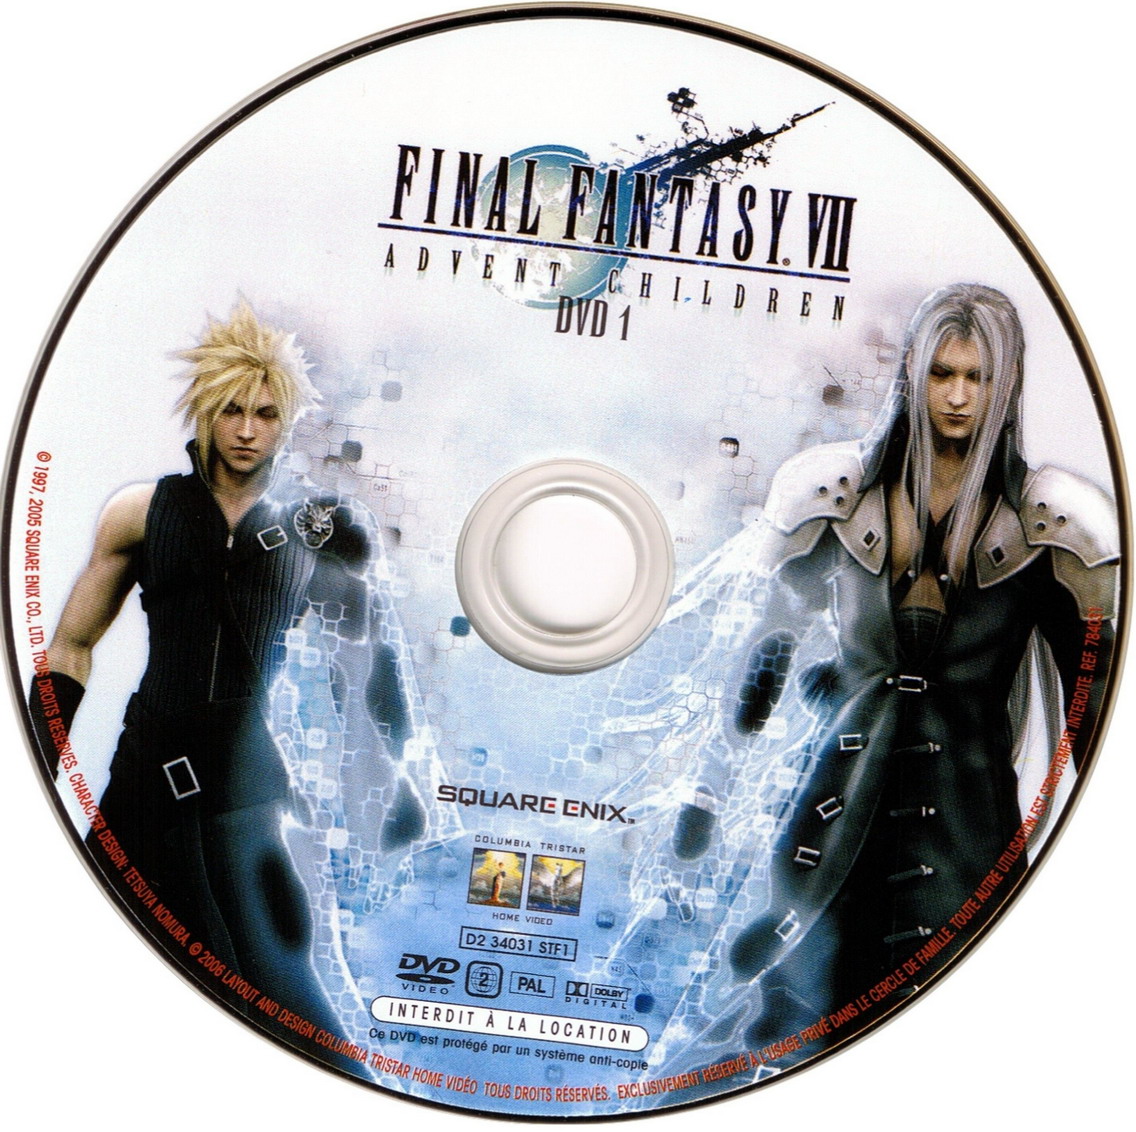 Final Fantasy VII Advent Children dvd 1